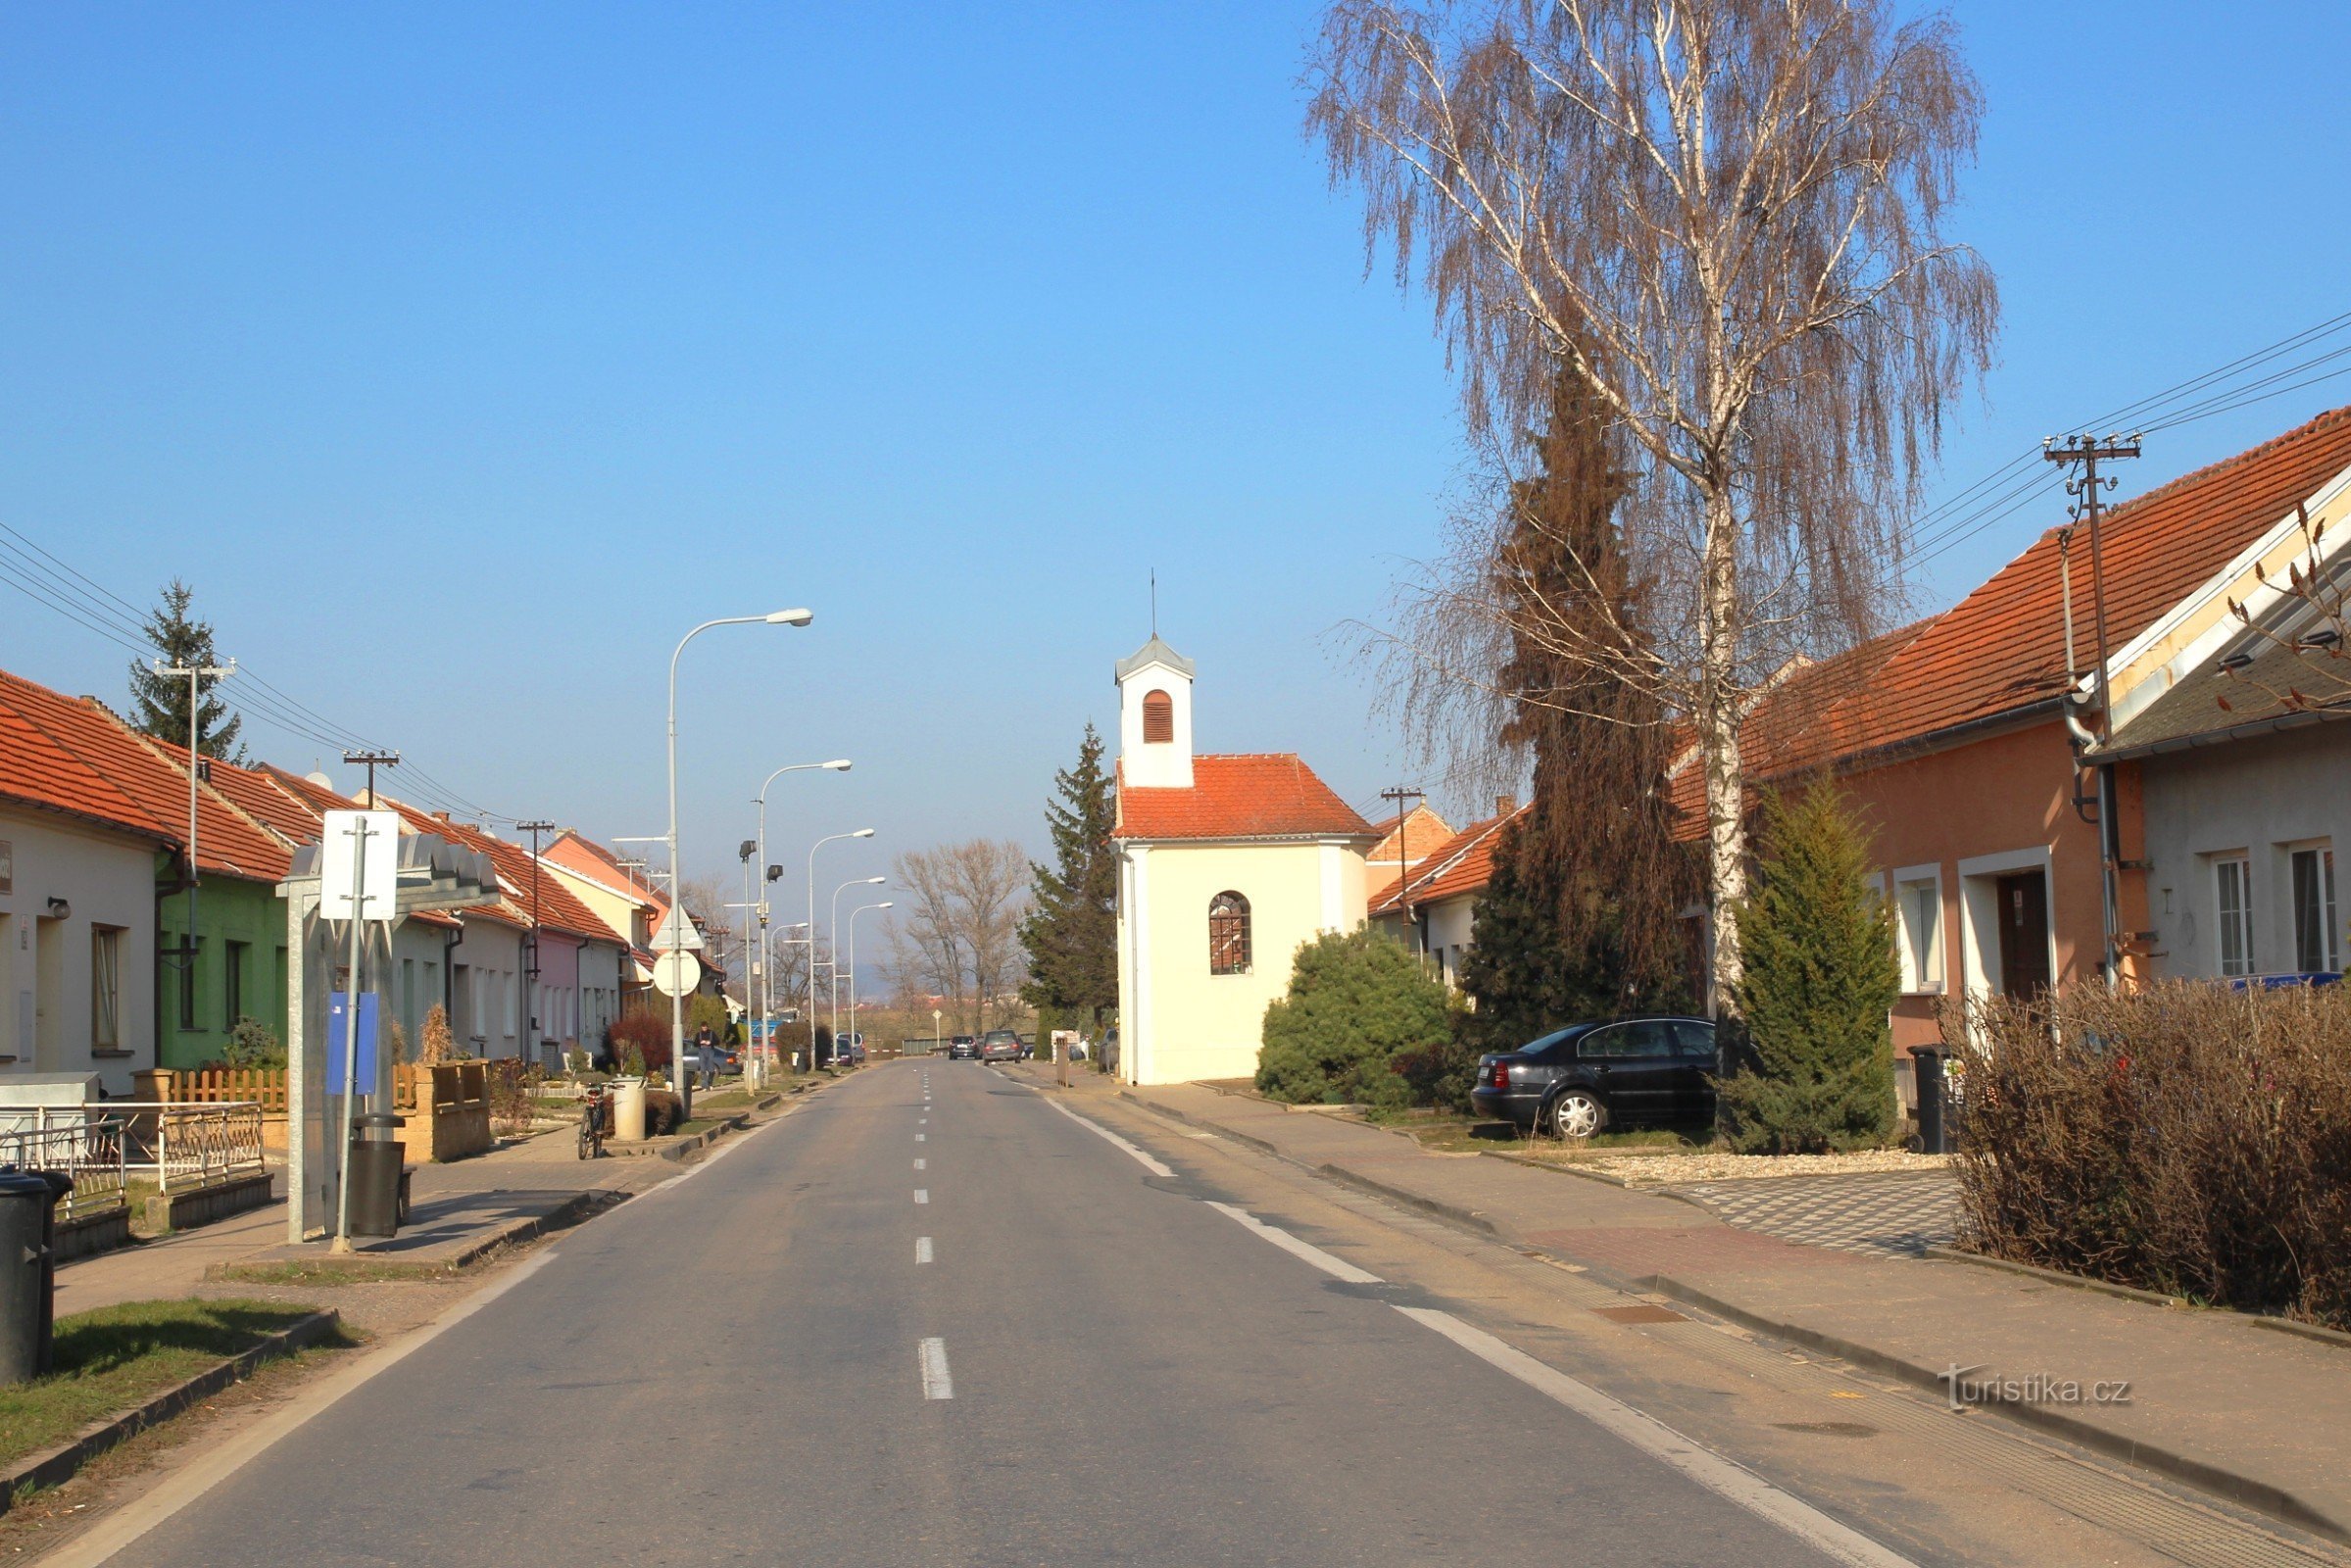 strada Zapletalova